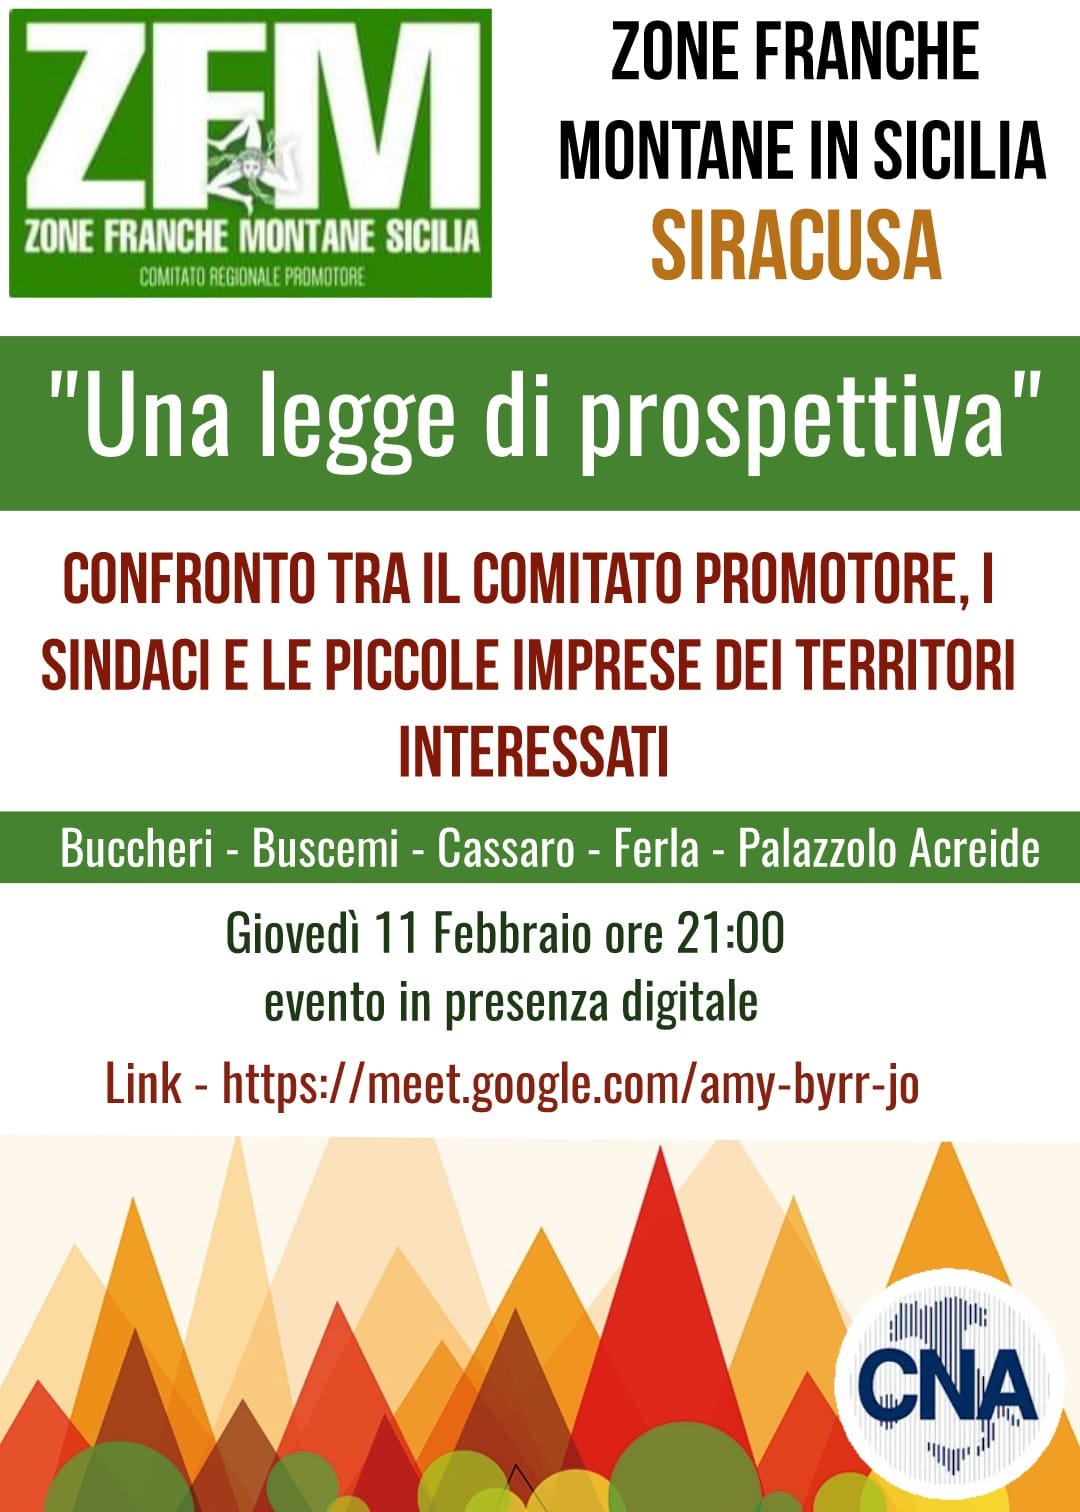 Cna – “Zone Franche Montane in Sicilia, una legge di prospettiva”: giovedì 11 febbraio l’incontro online